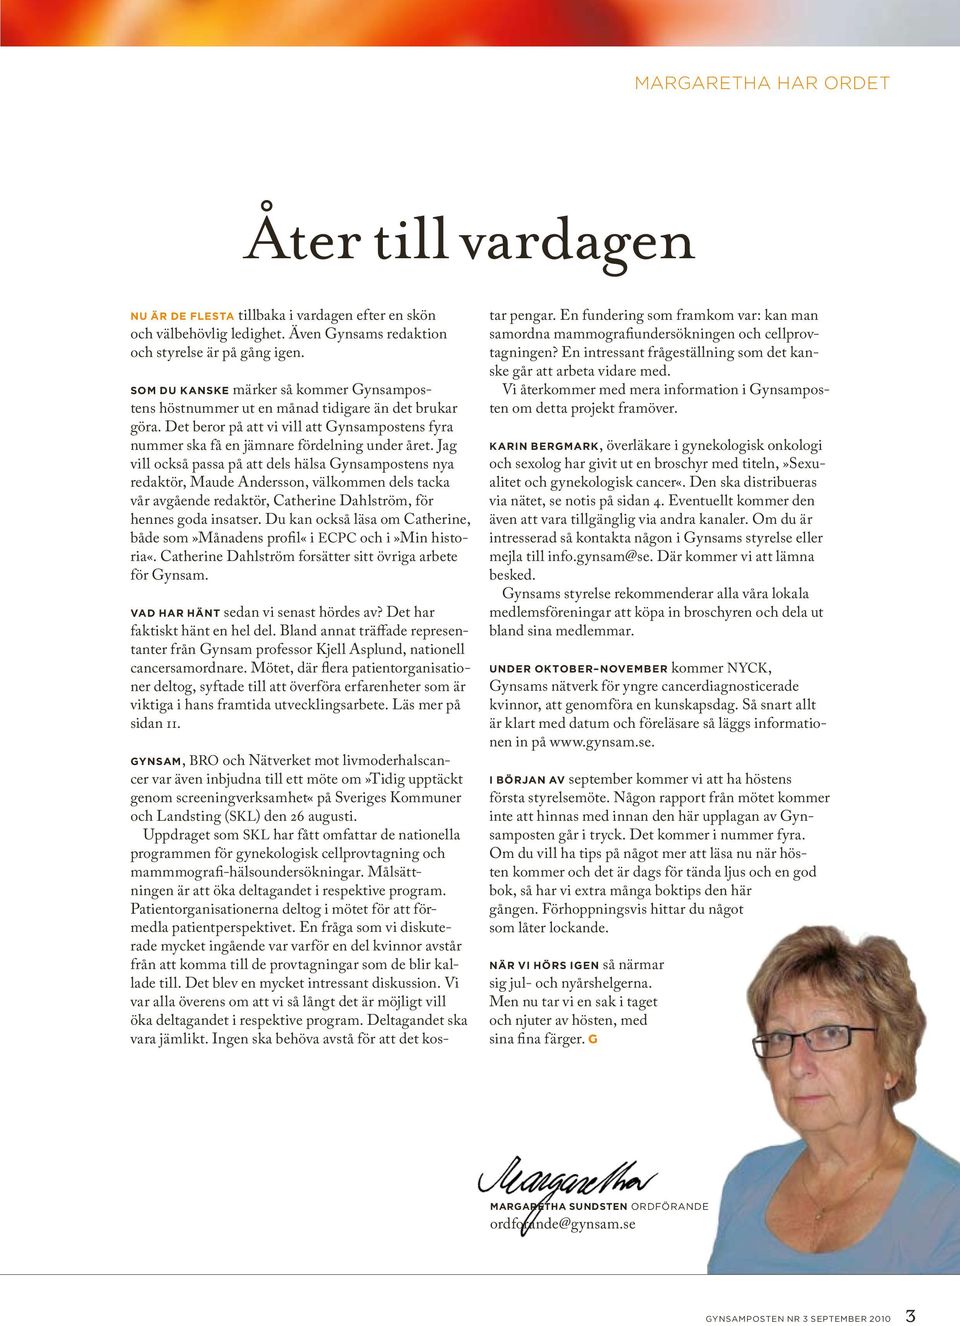 Jag vill också passa på att dels hälsa Gynsampostens nya redaktör, Maude Andersson, välkommen dels tacka vår avgående redaktör, Catherine Dahlström, för hennes goda insatser.